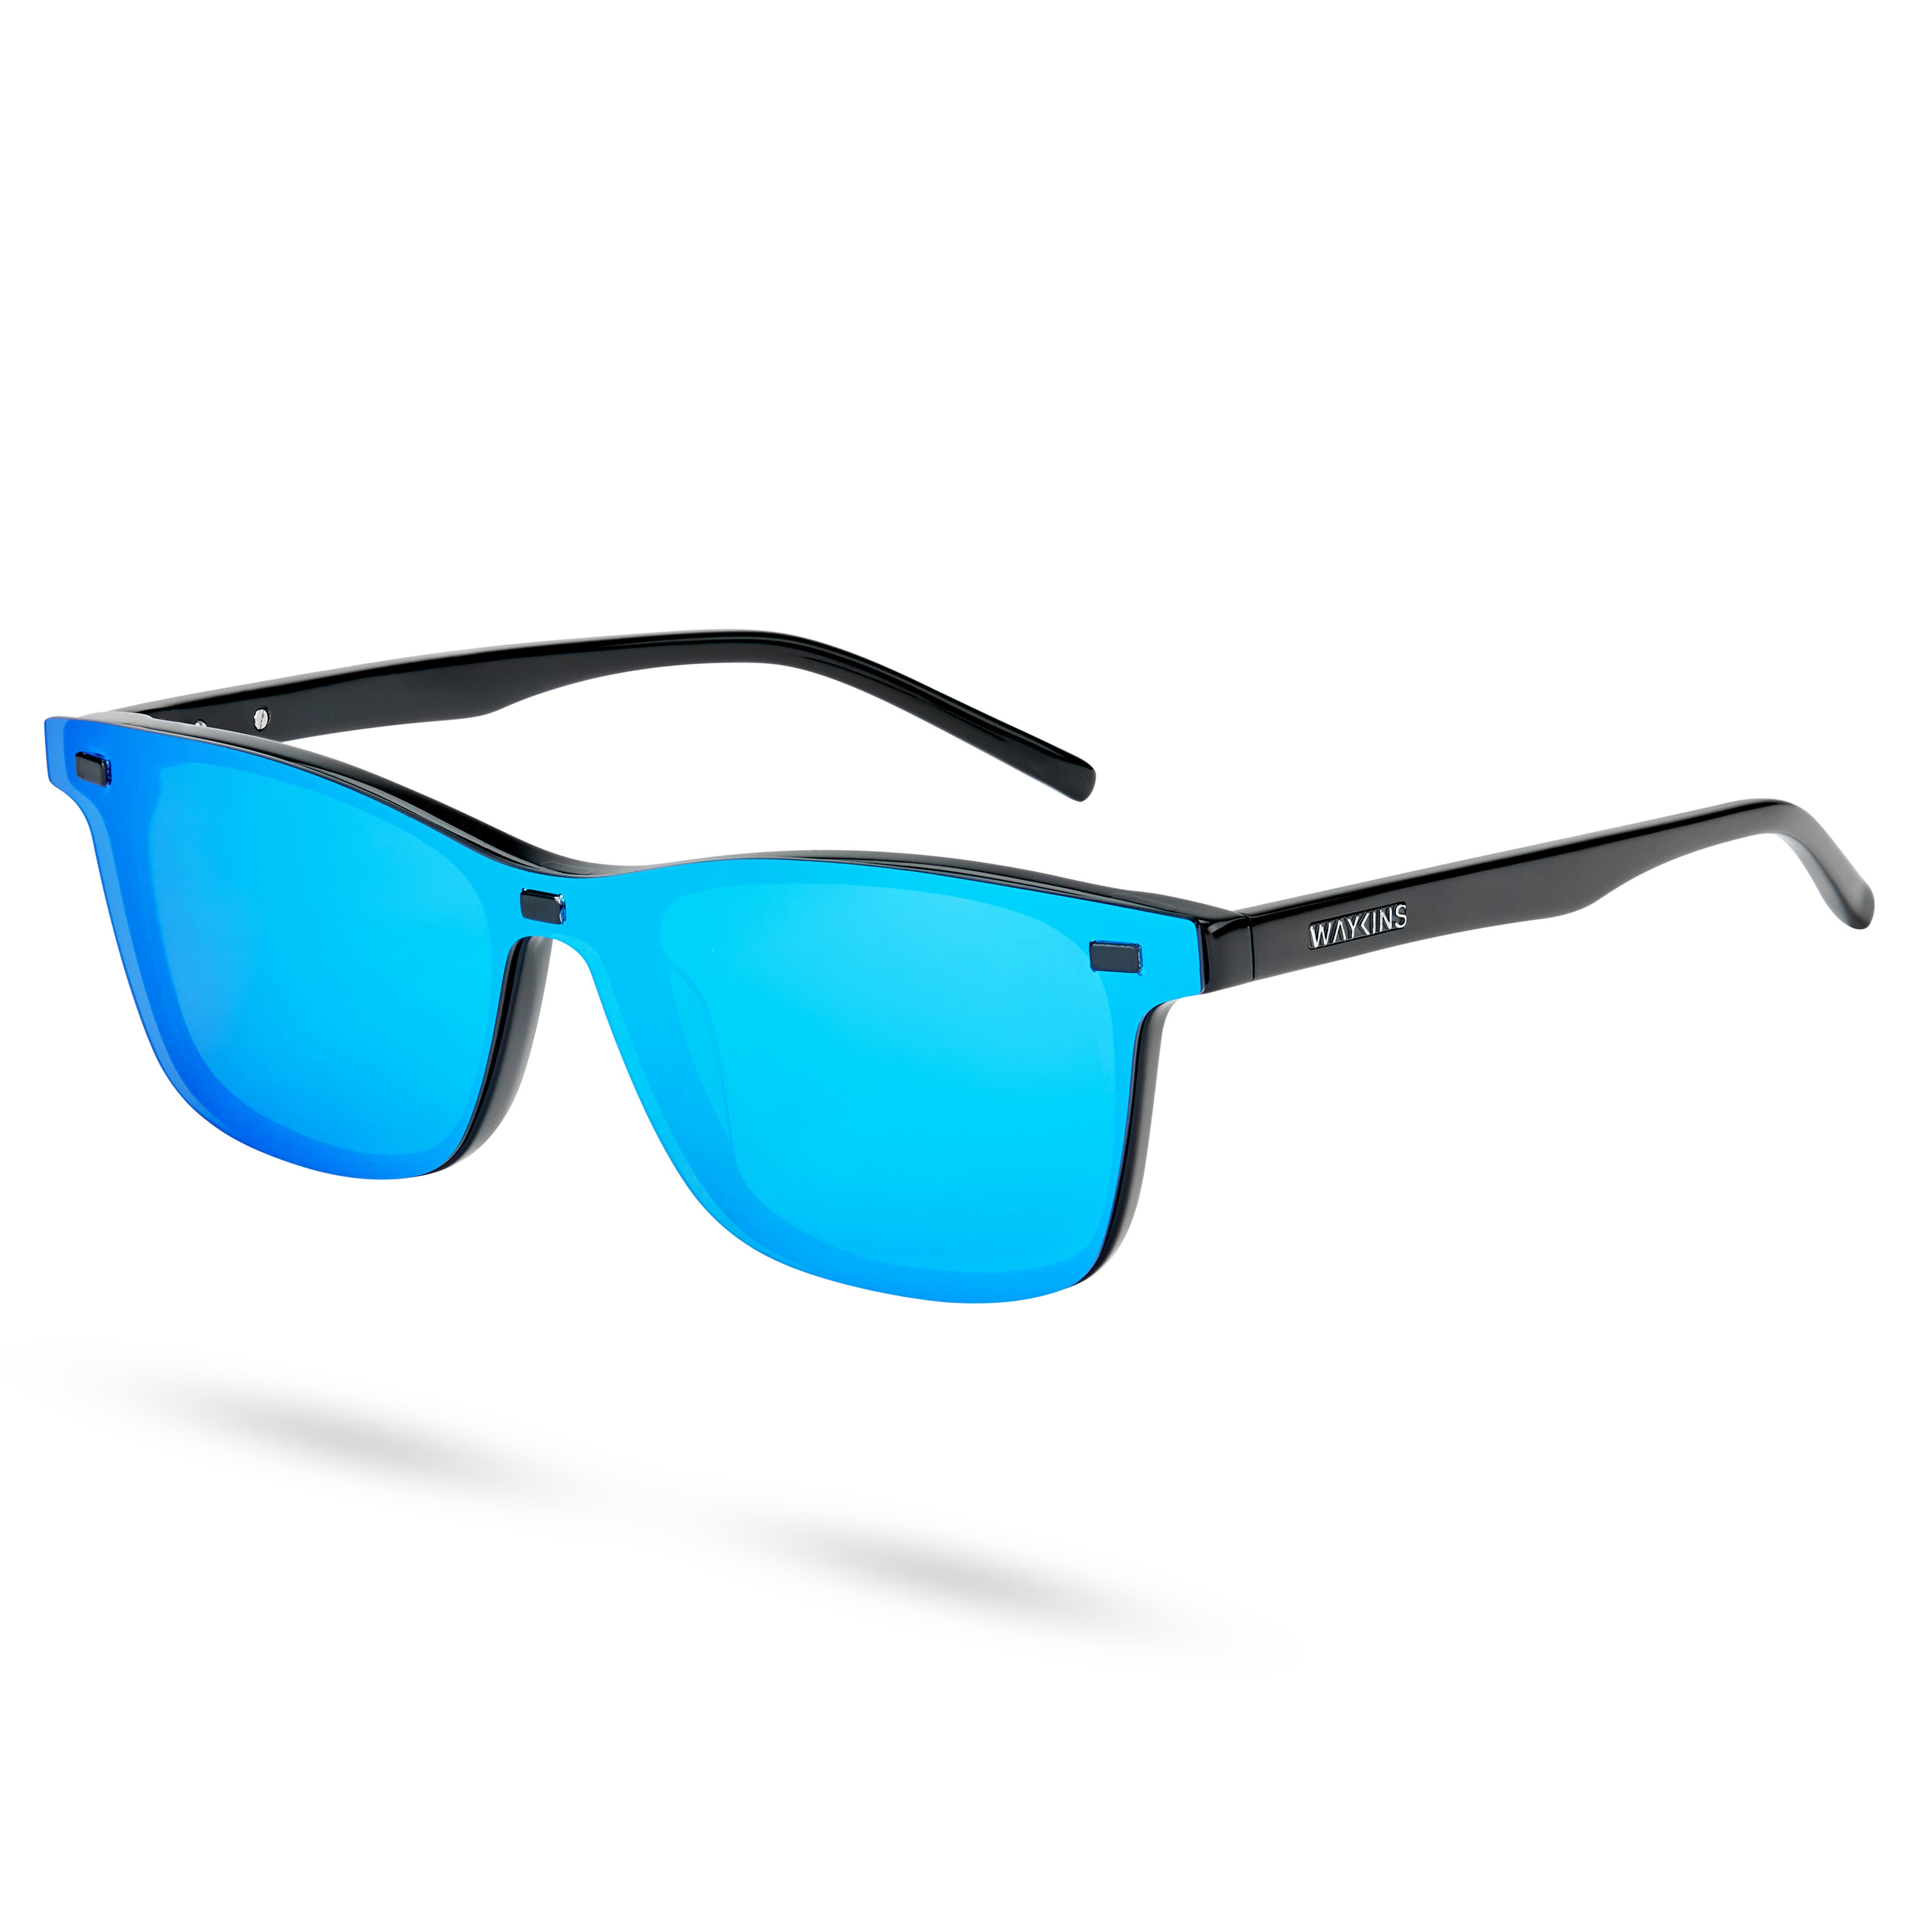 Magnetyczne przypinane okulary przeciwsłoneczne klasy Premium